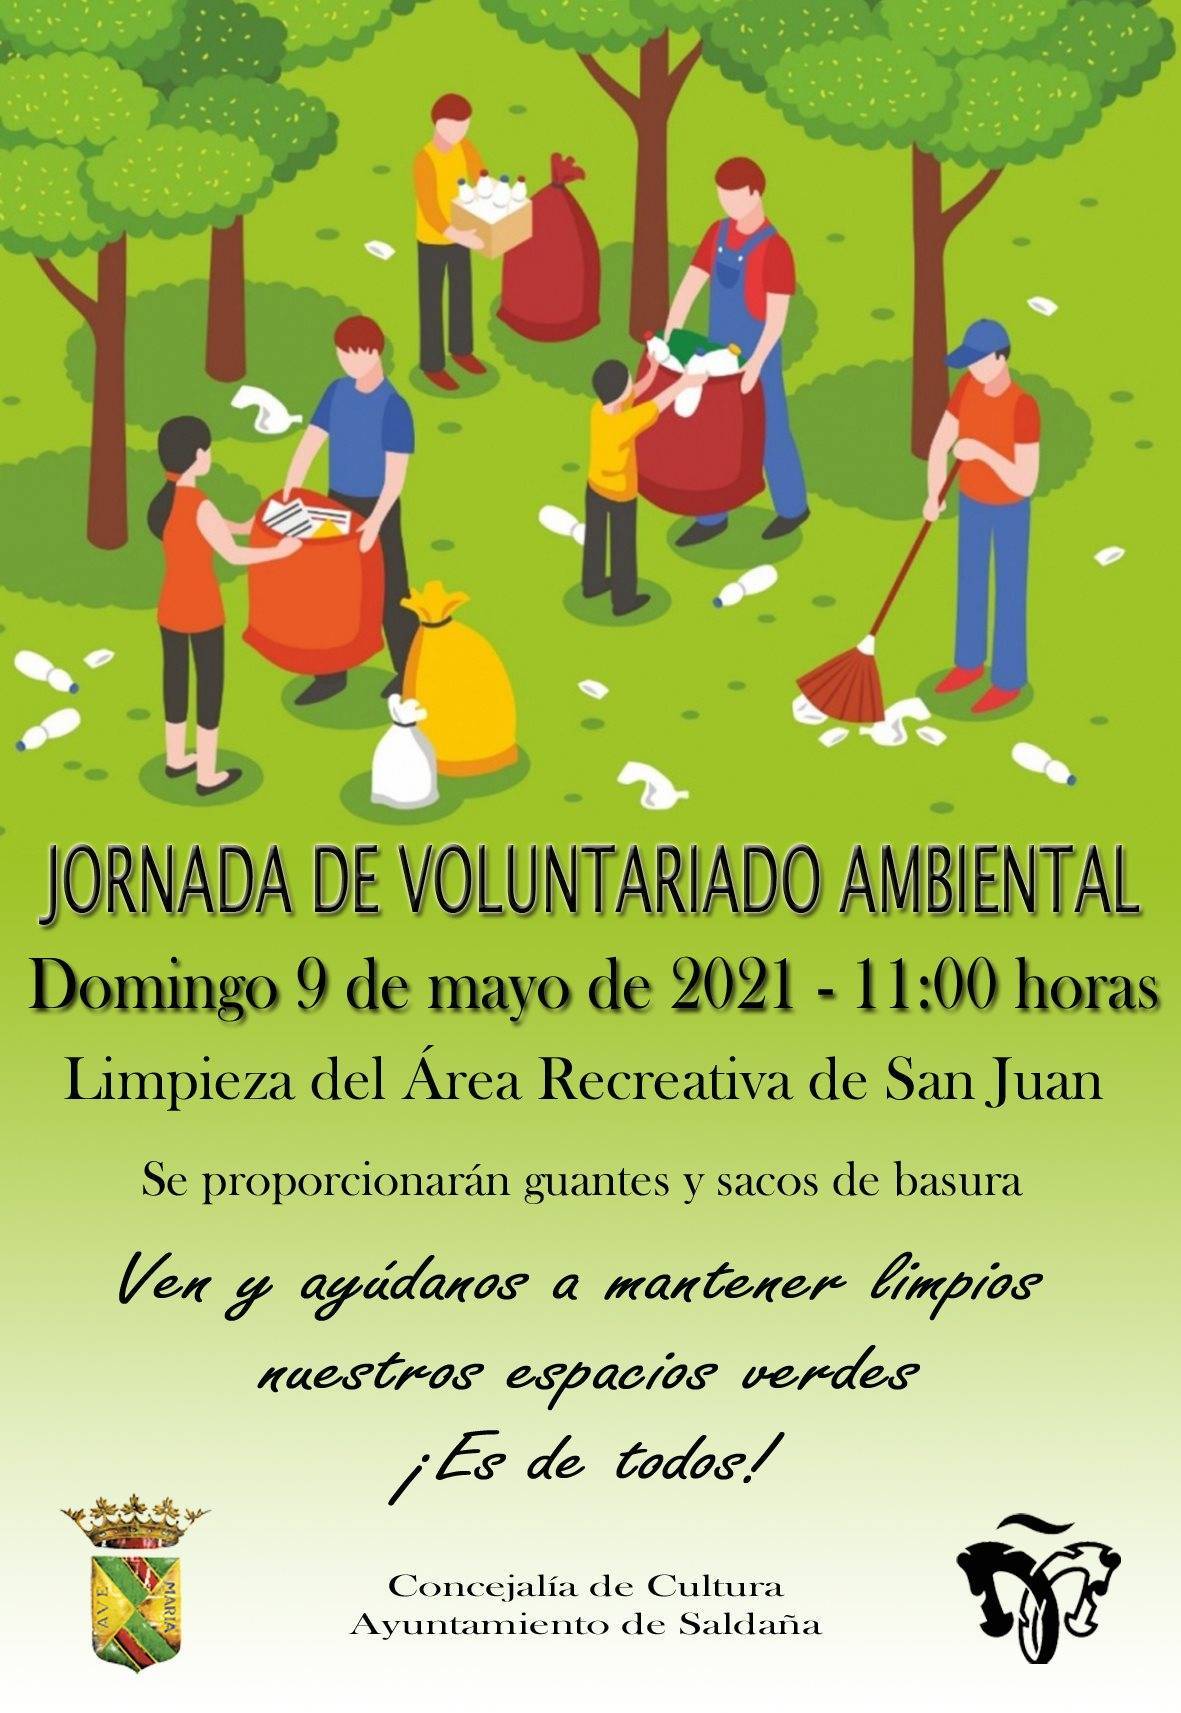 Jornada de voluntariado ambiental (mayo 2021) - Saldaña (Palencia)